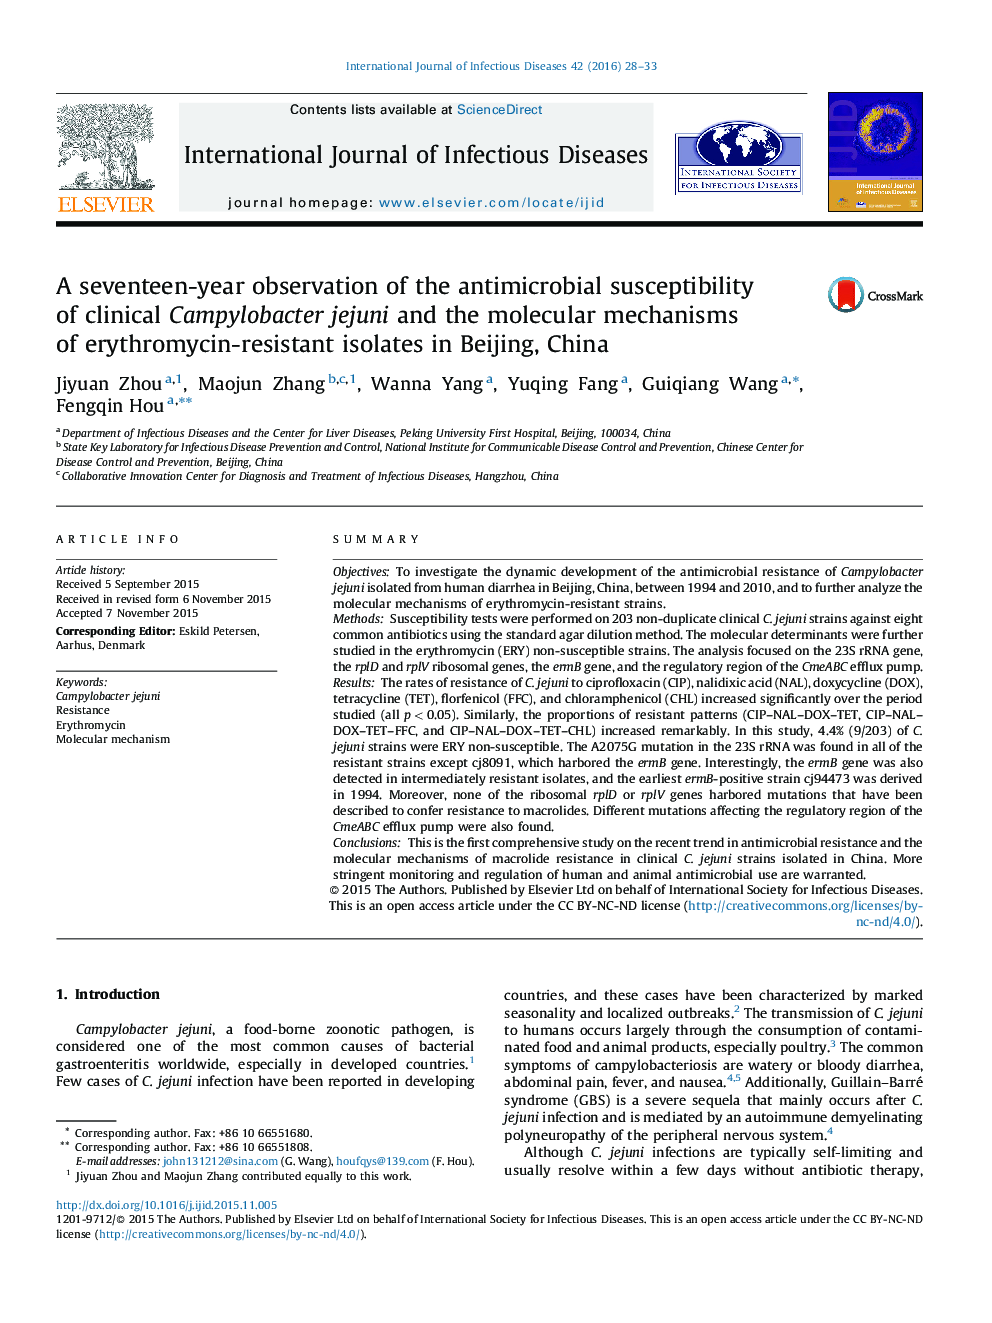 بررسی حساسیت ضد میکروبی کمپیلوباکتر ججونی بالینی و مکانیزم های مولکولی جدایه های مقاوم به اریترومایسین در پکن، چین 